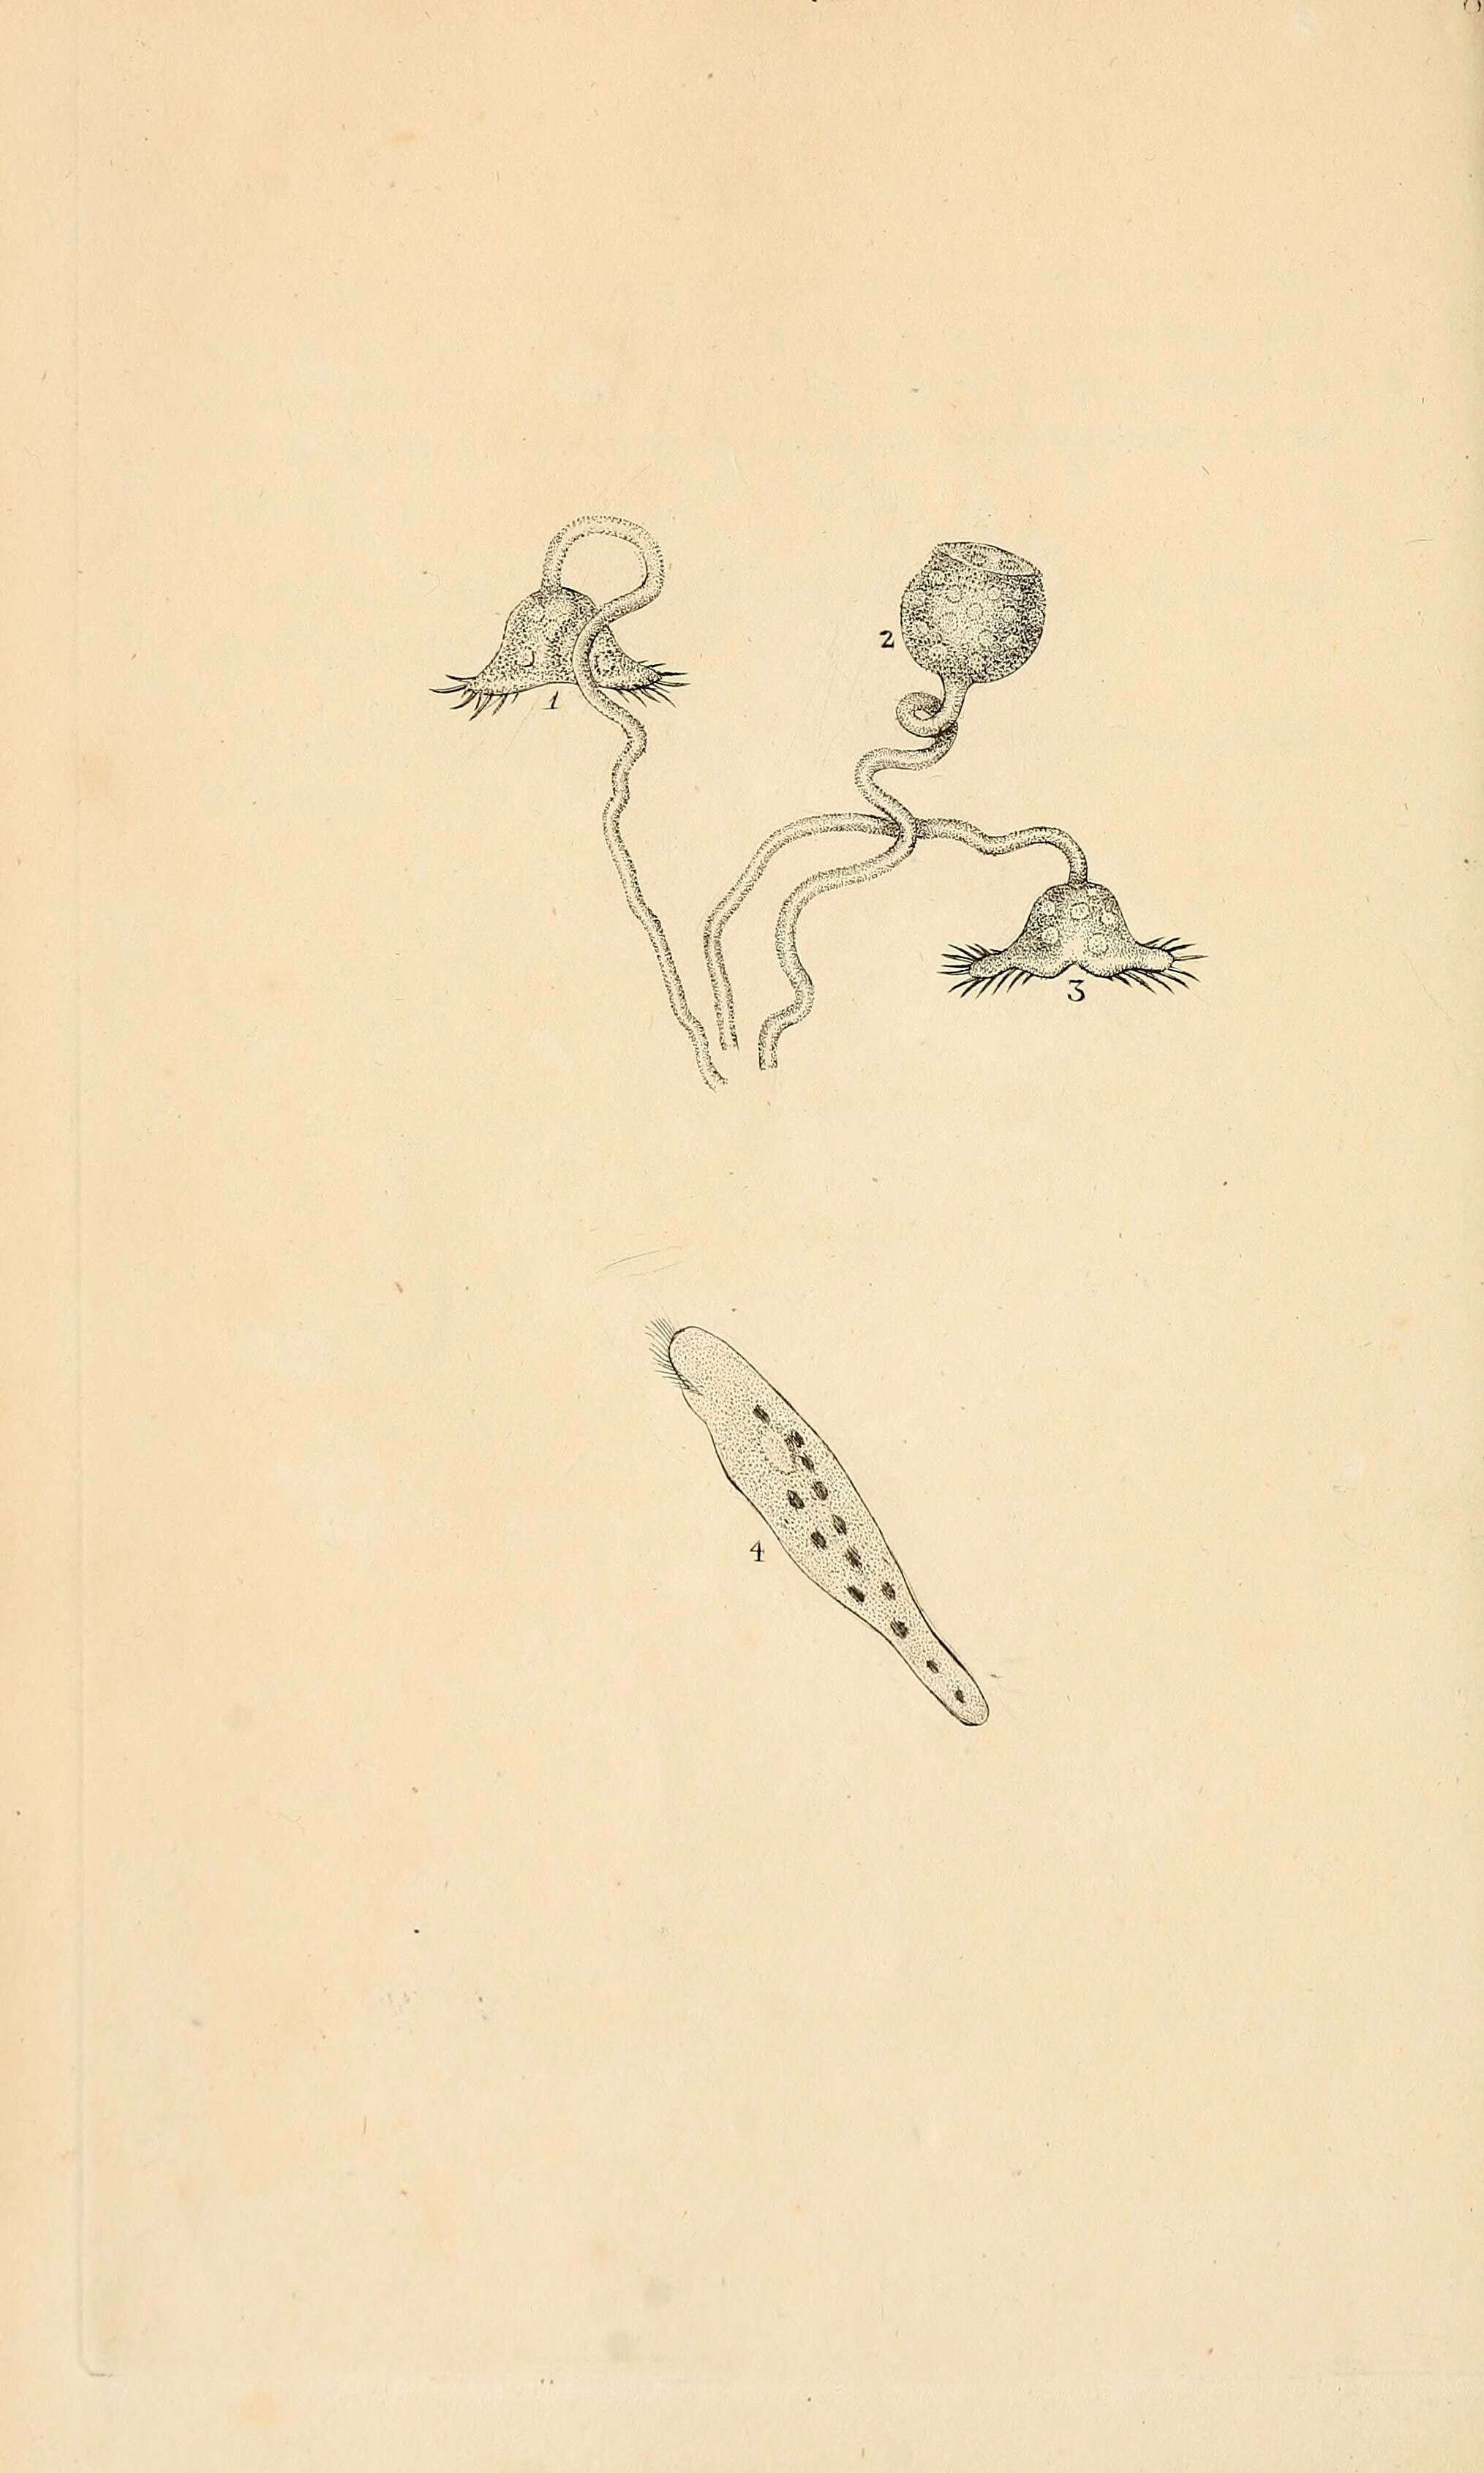 Vorticella lunaris Müller 1773的圖片